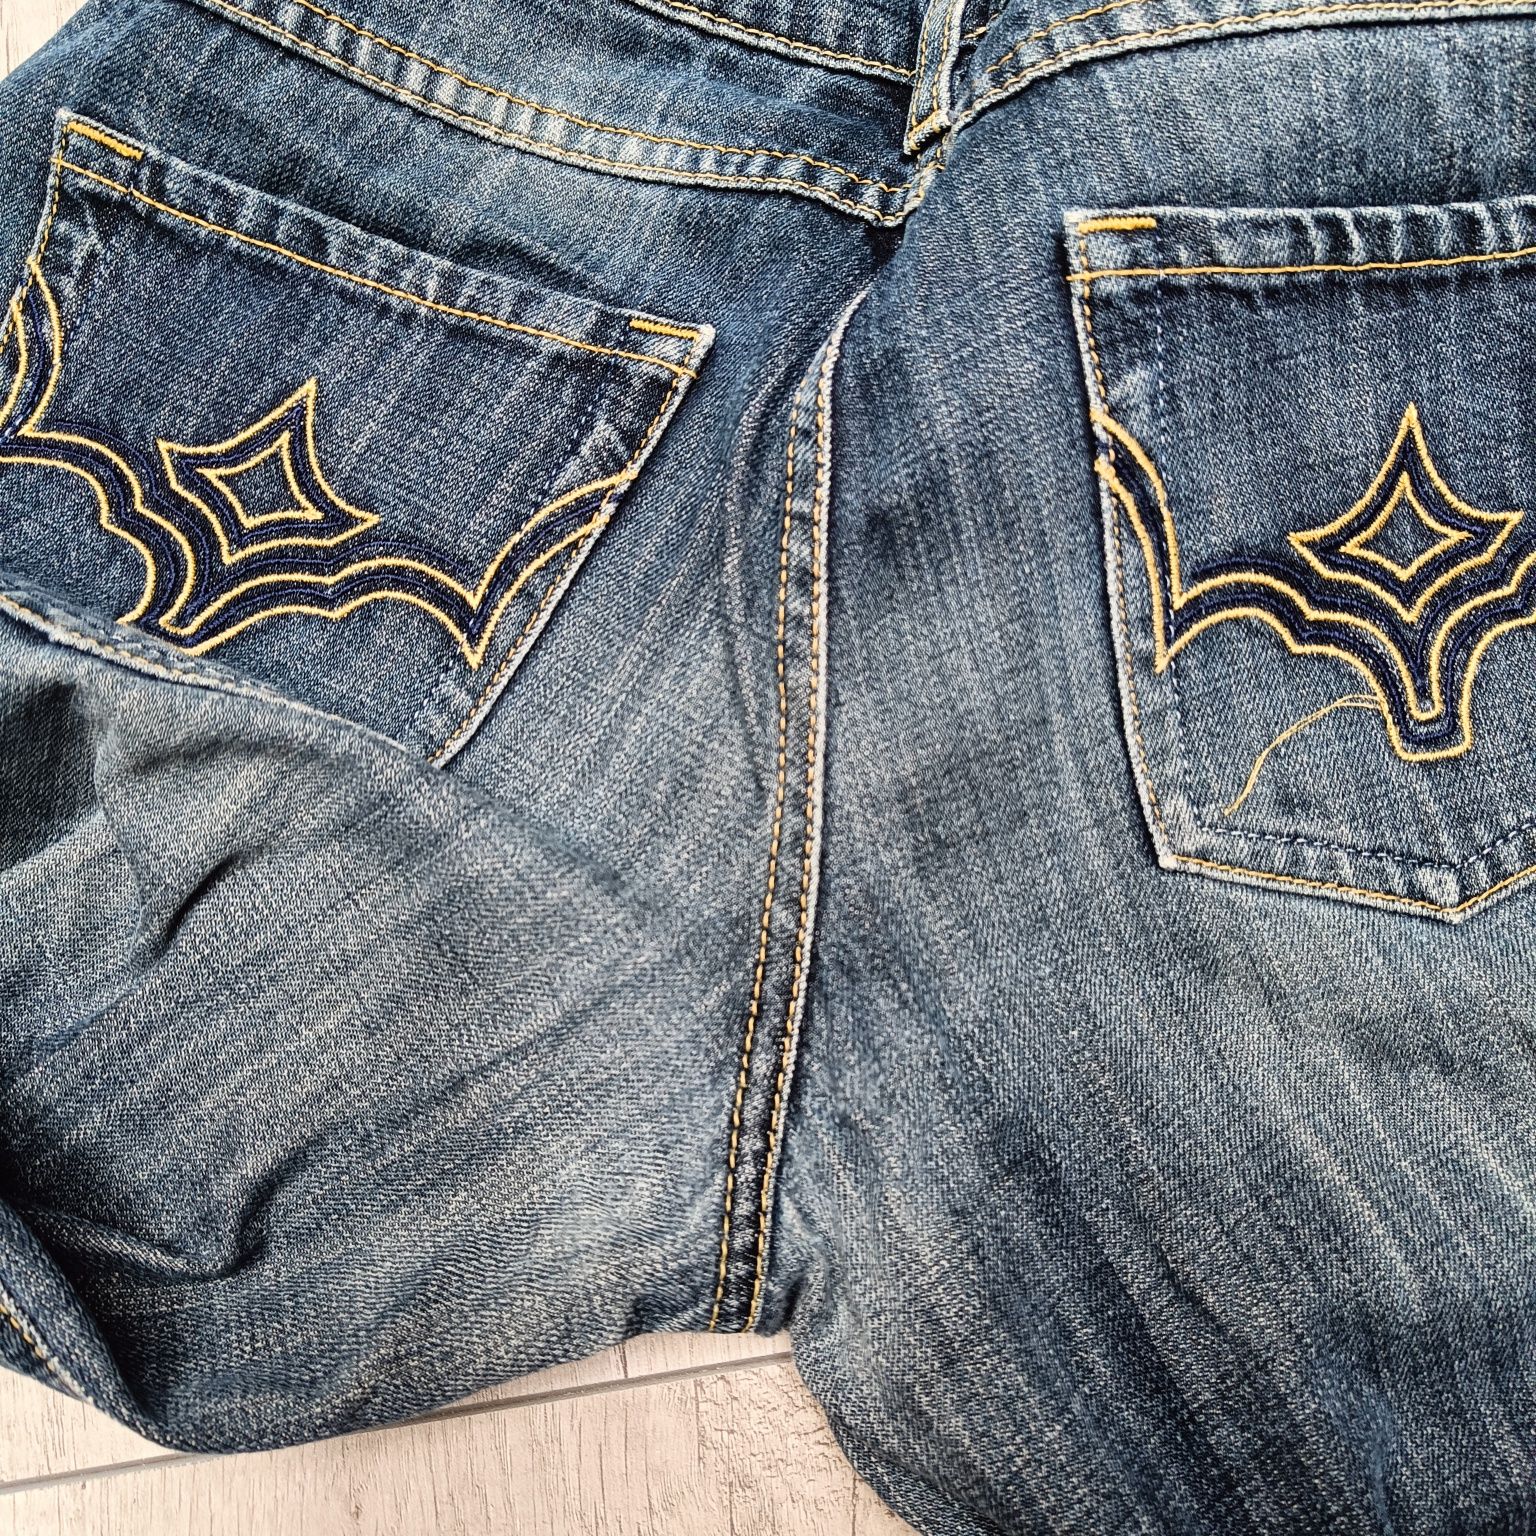 Niebieskie spodnie jeansowe damskie, dżinsy Deep, rozm. 38 / M [29/32]